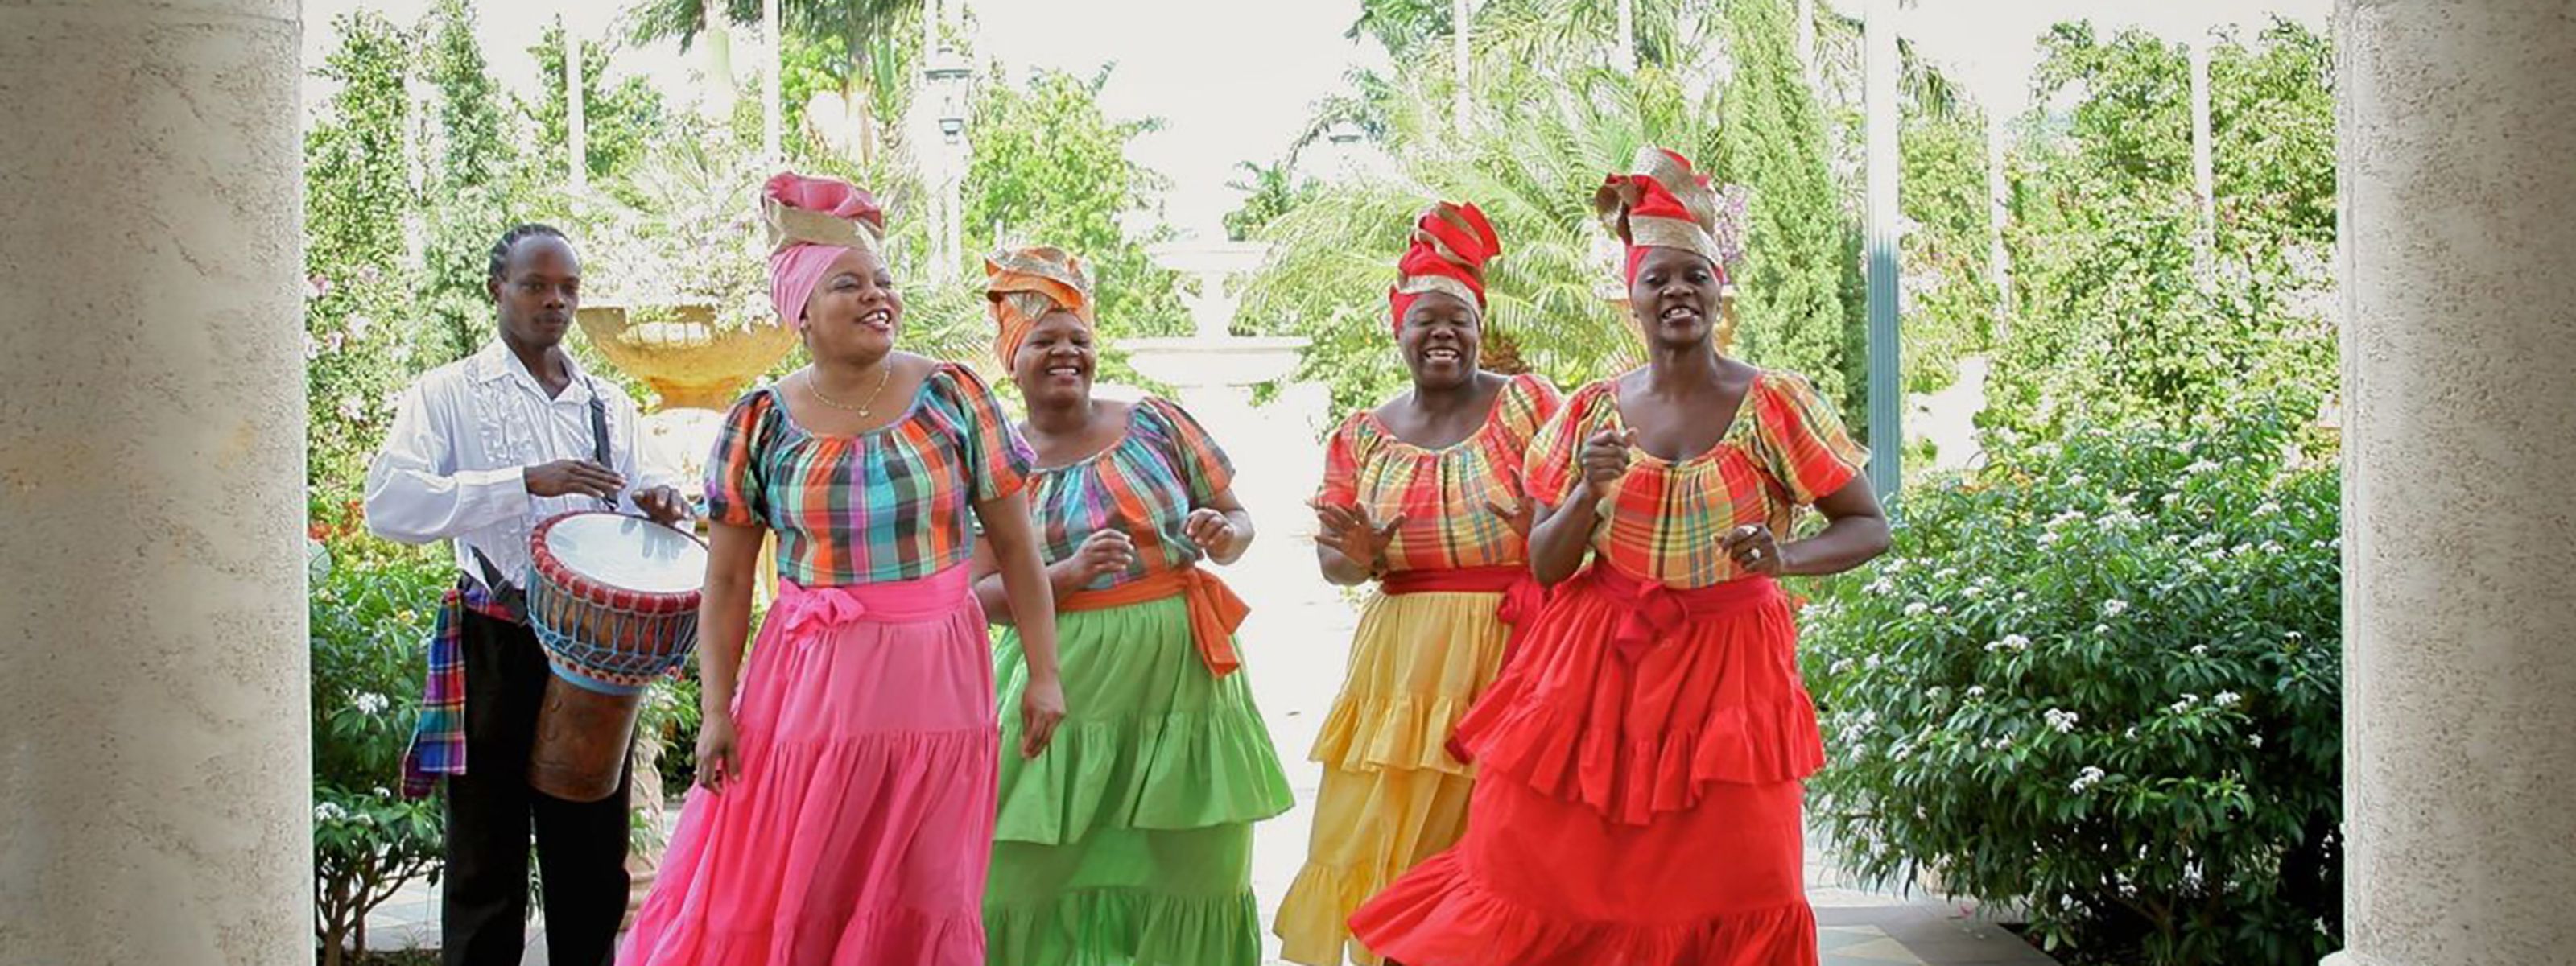 Traditioneller Gesang und Tanz, Jamaika